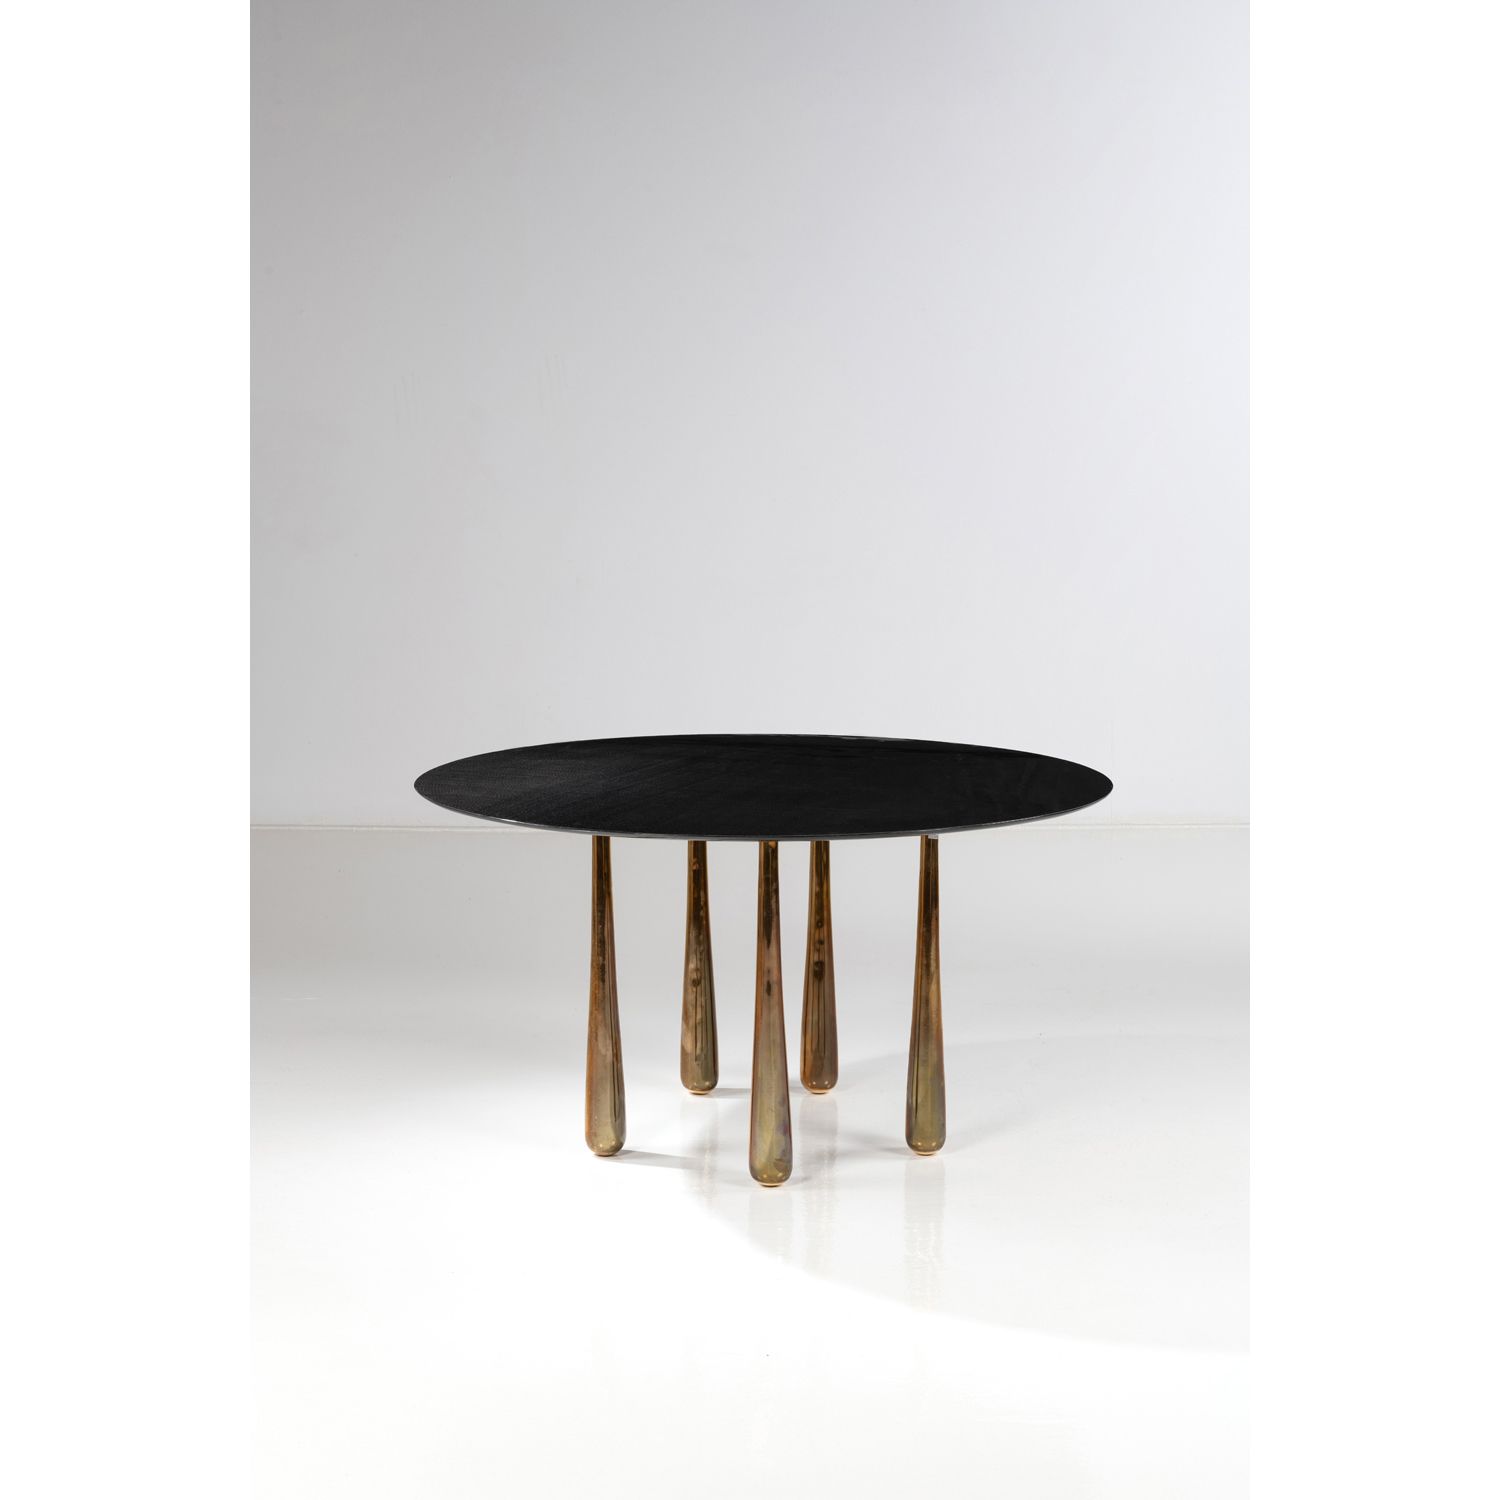 Null 帕特里克-纳加尔（生于1946年

桌子--独特的作品

碳纤维和青铜

模型创建于2010年

高75 × 直径140厘米